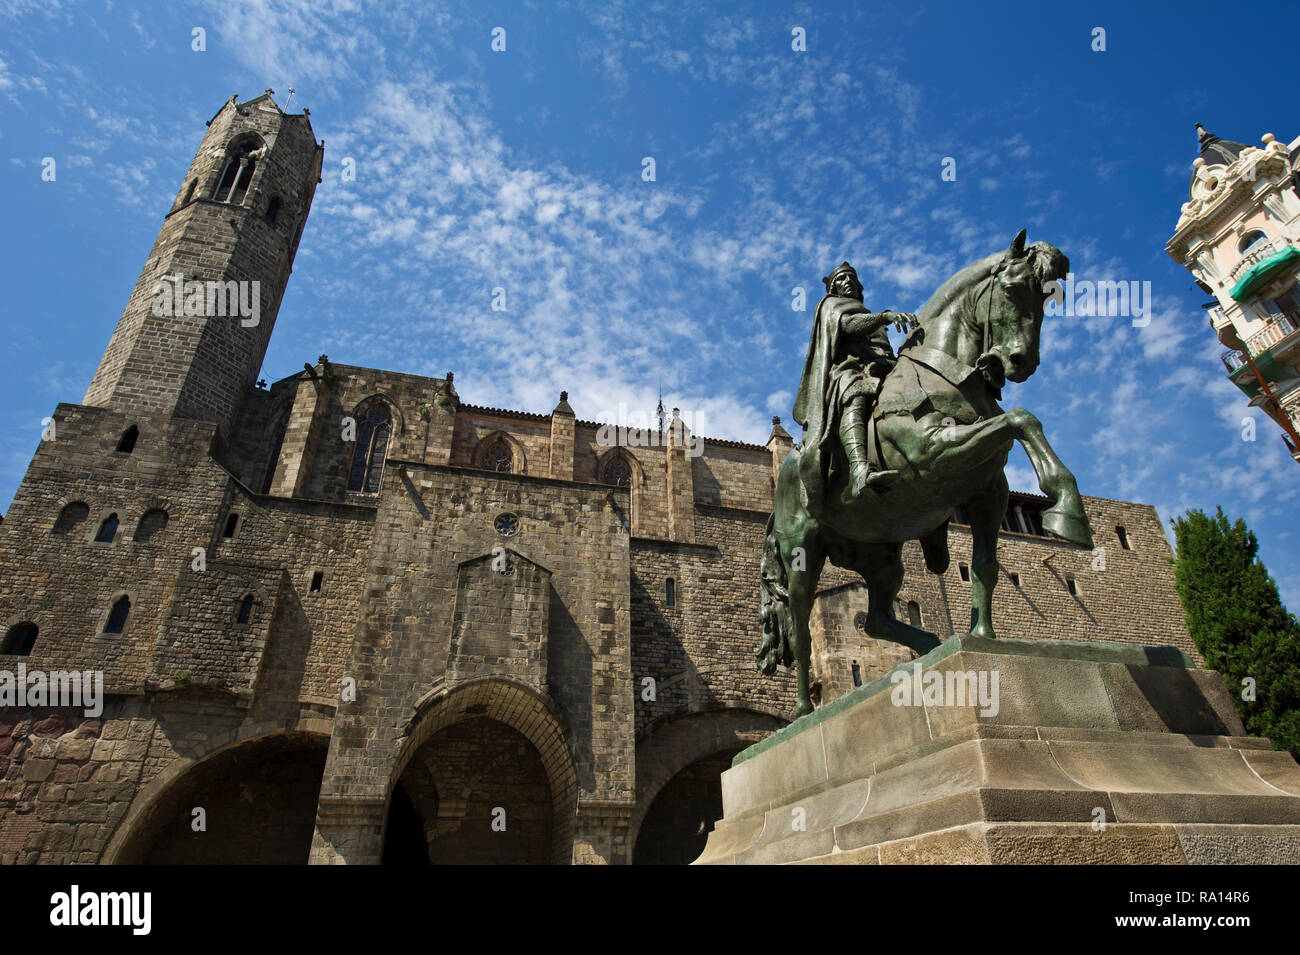 Statua equestre di Ramón Berenguer III di Josep Llimona, Barcellona, Spagna Foto Stock